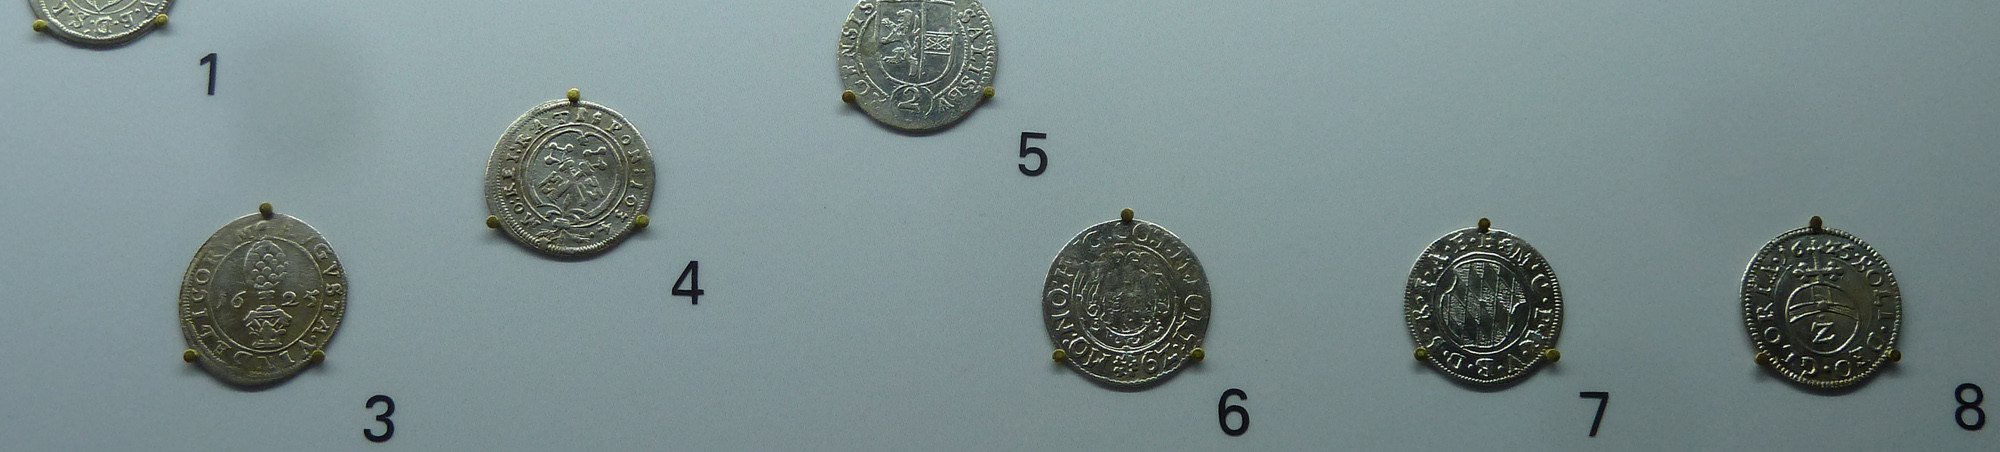 Acht nummerierte, befestigte Münzen